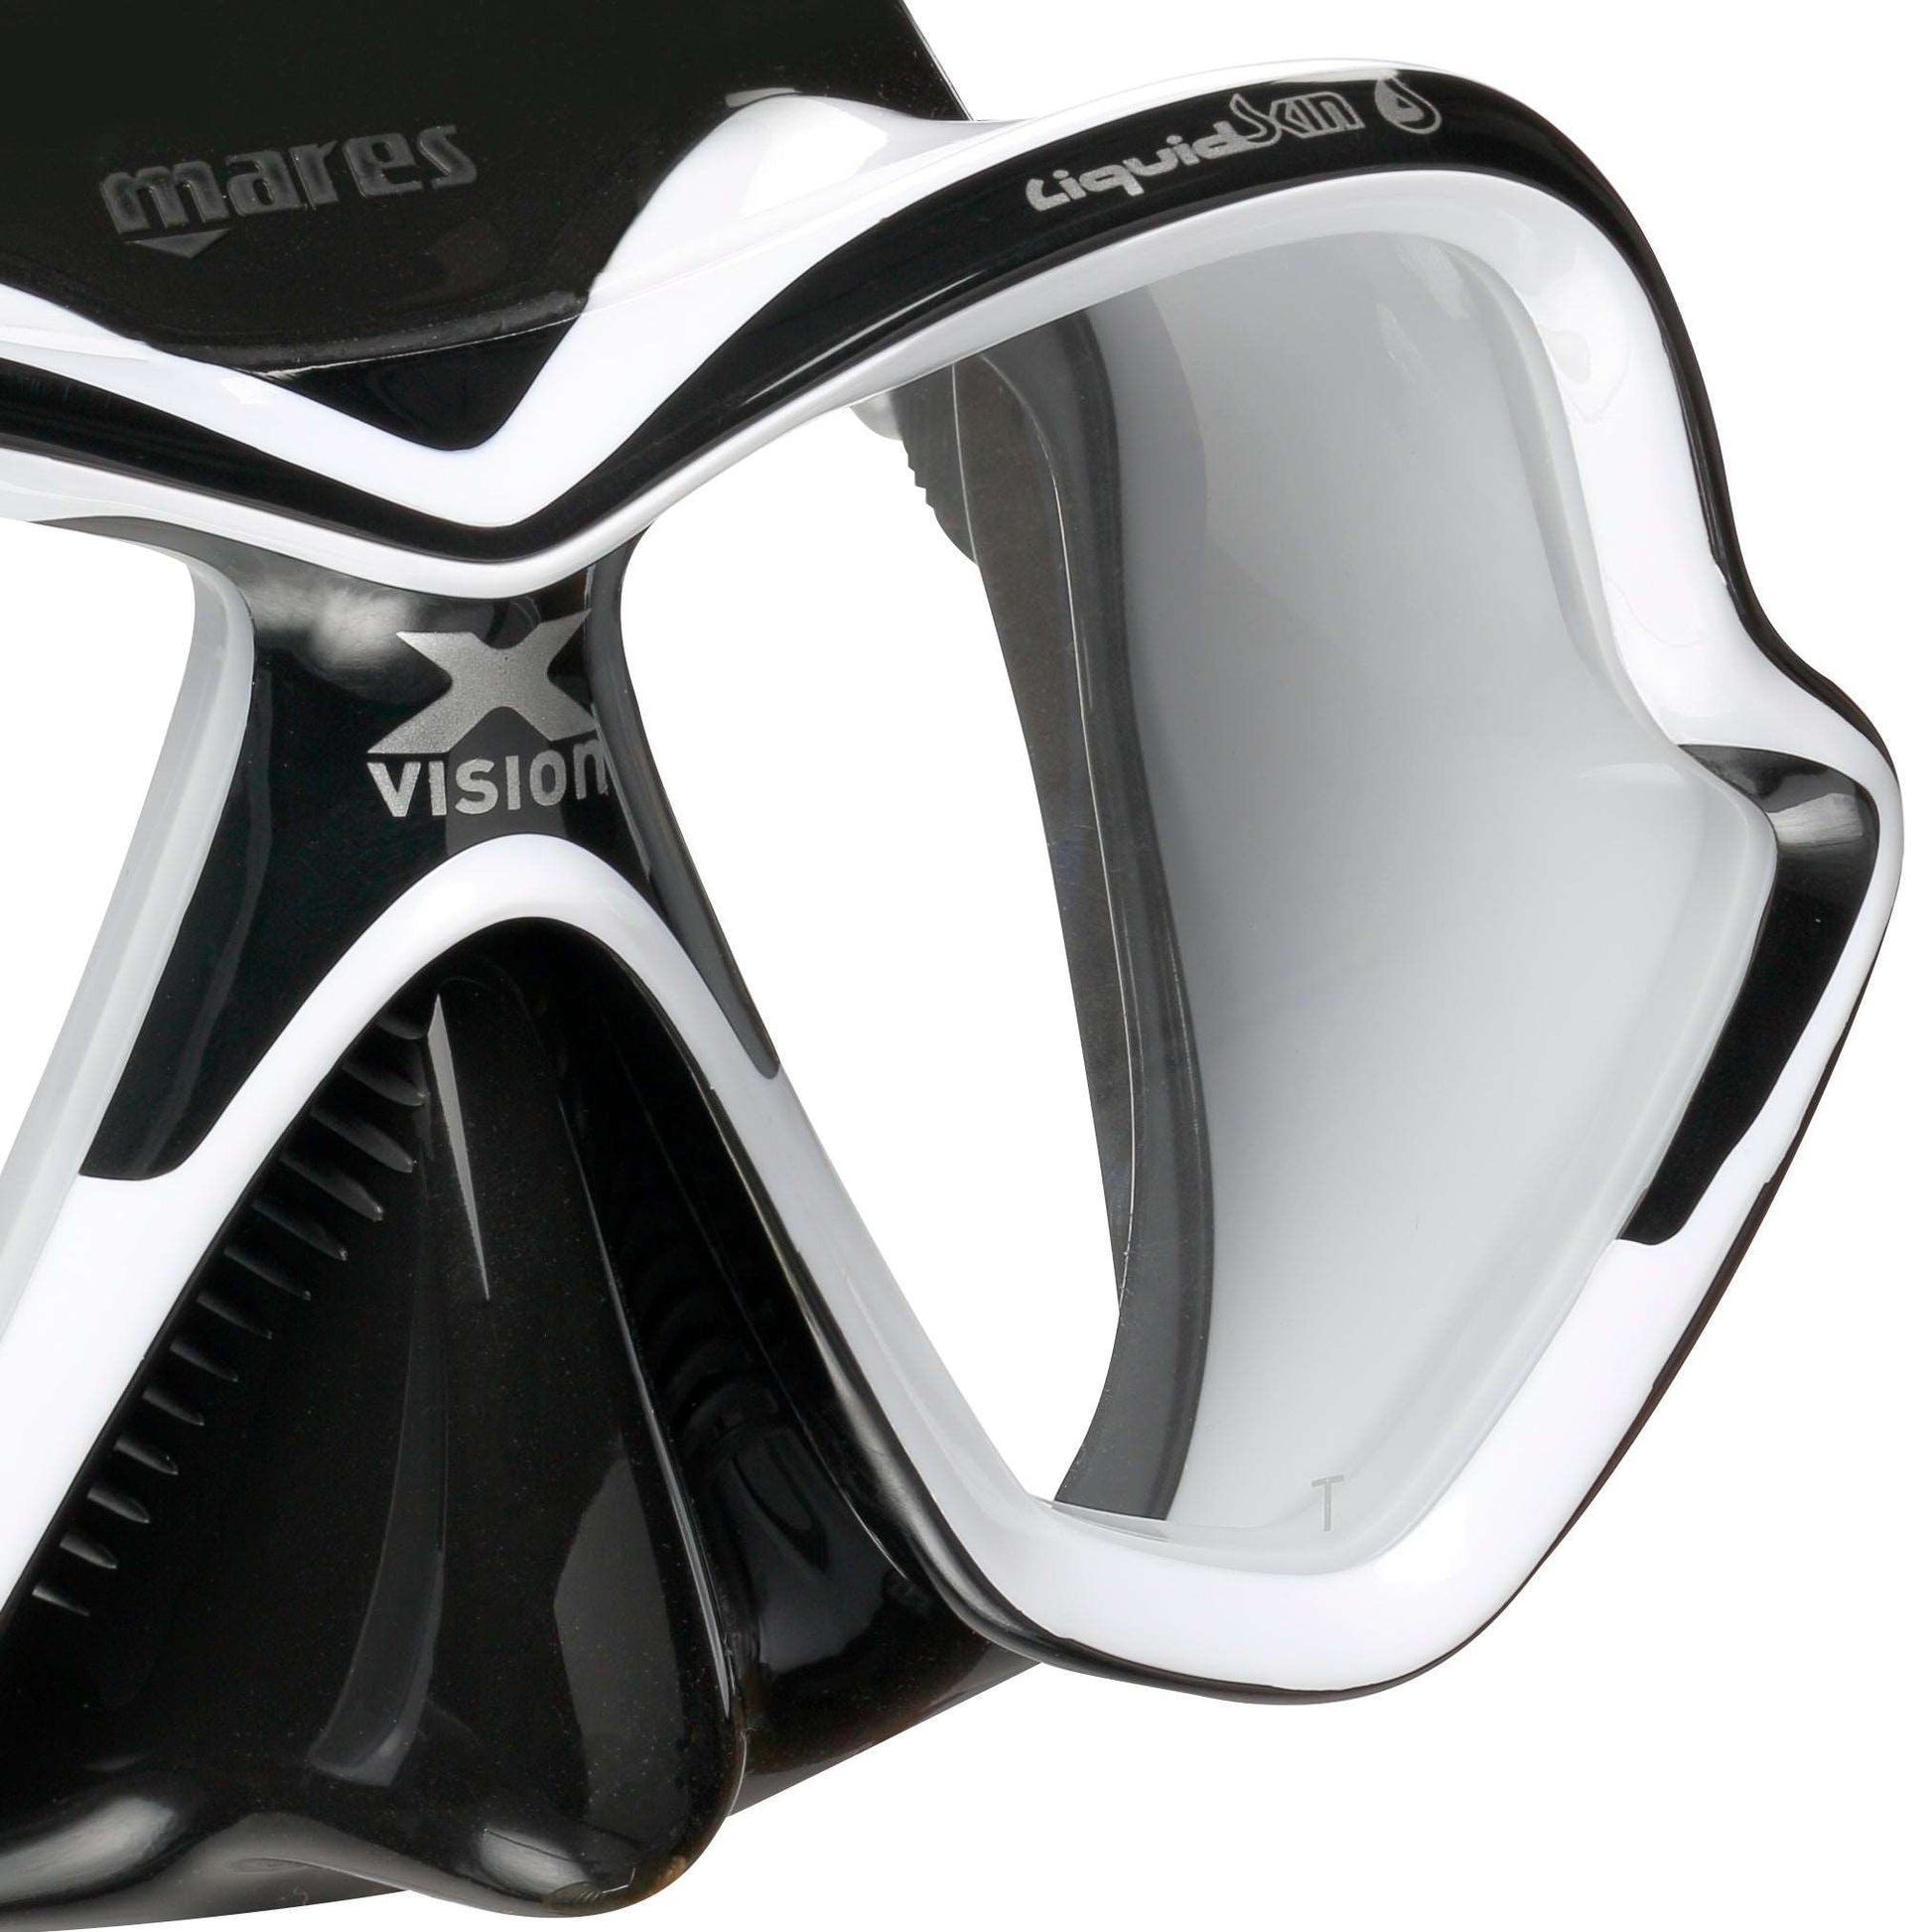 Mares X-Vision Ultra Liquivision Mask